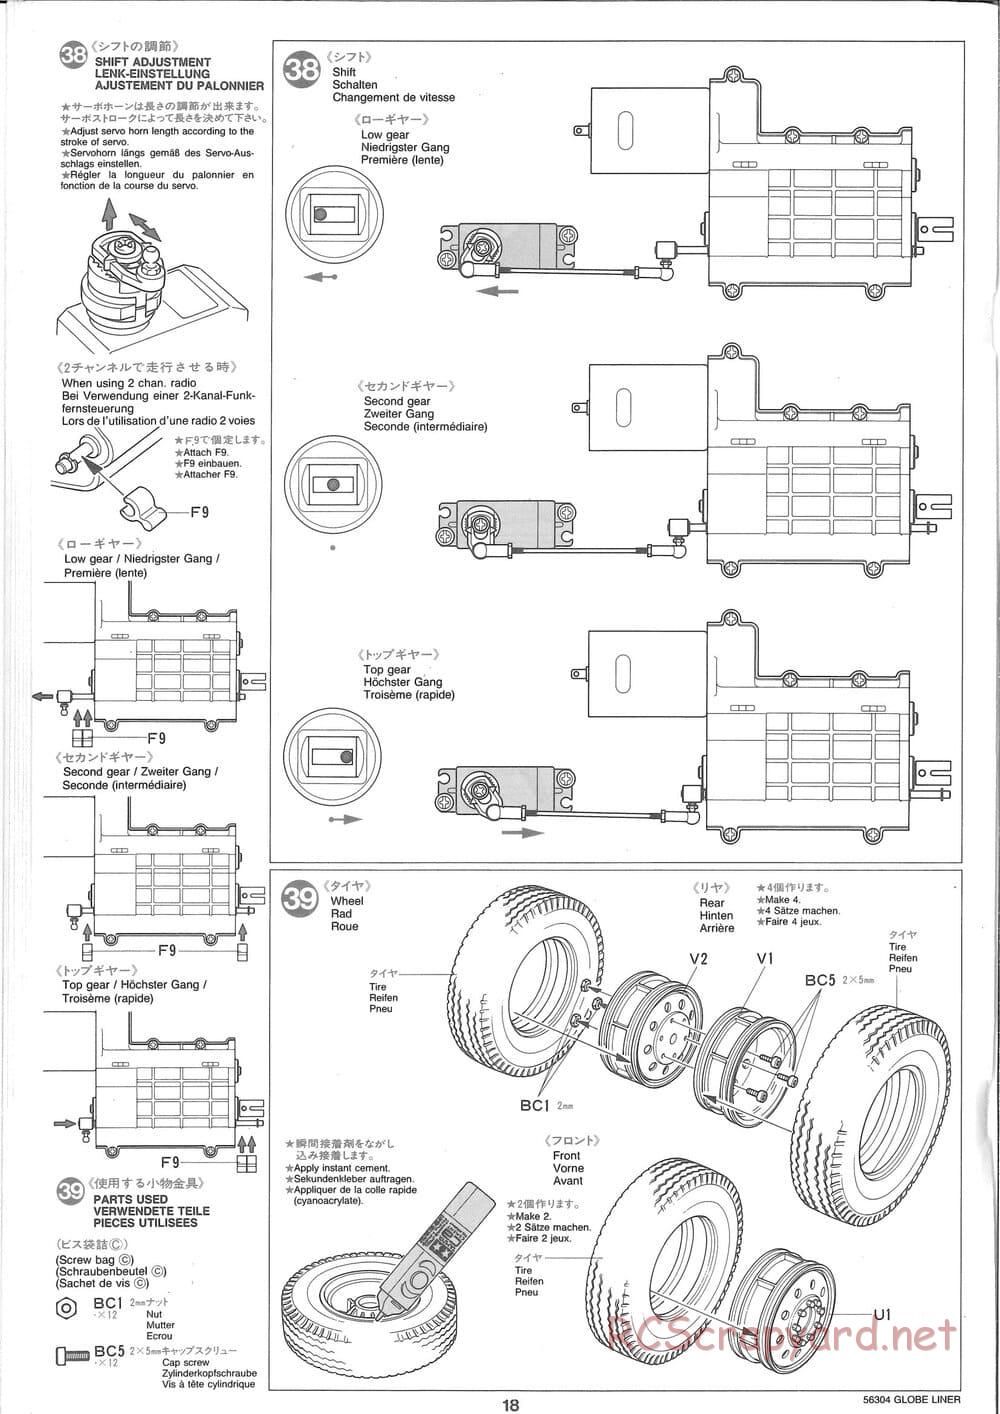 Tamiya - Globe Liner - Manual - Page 18